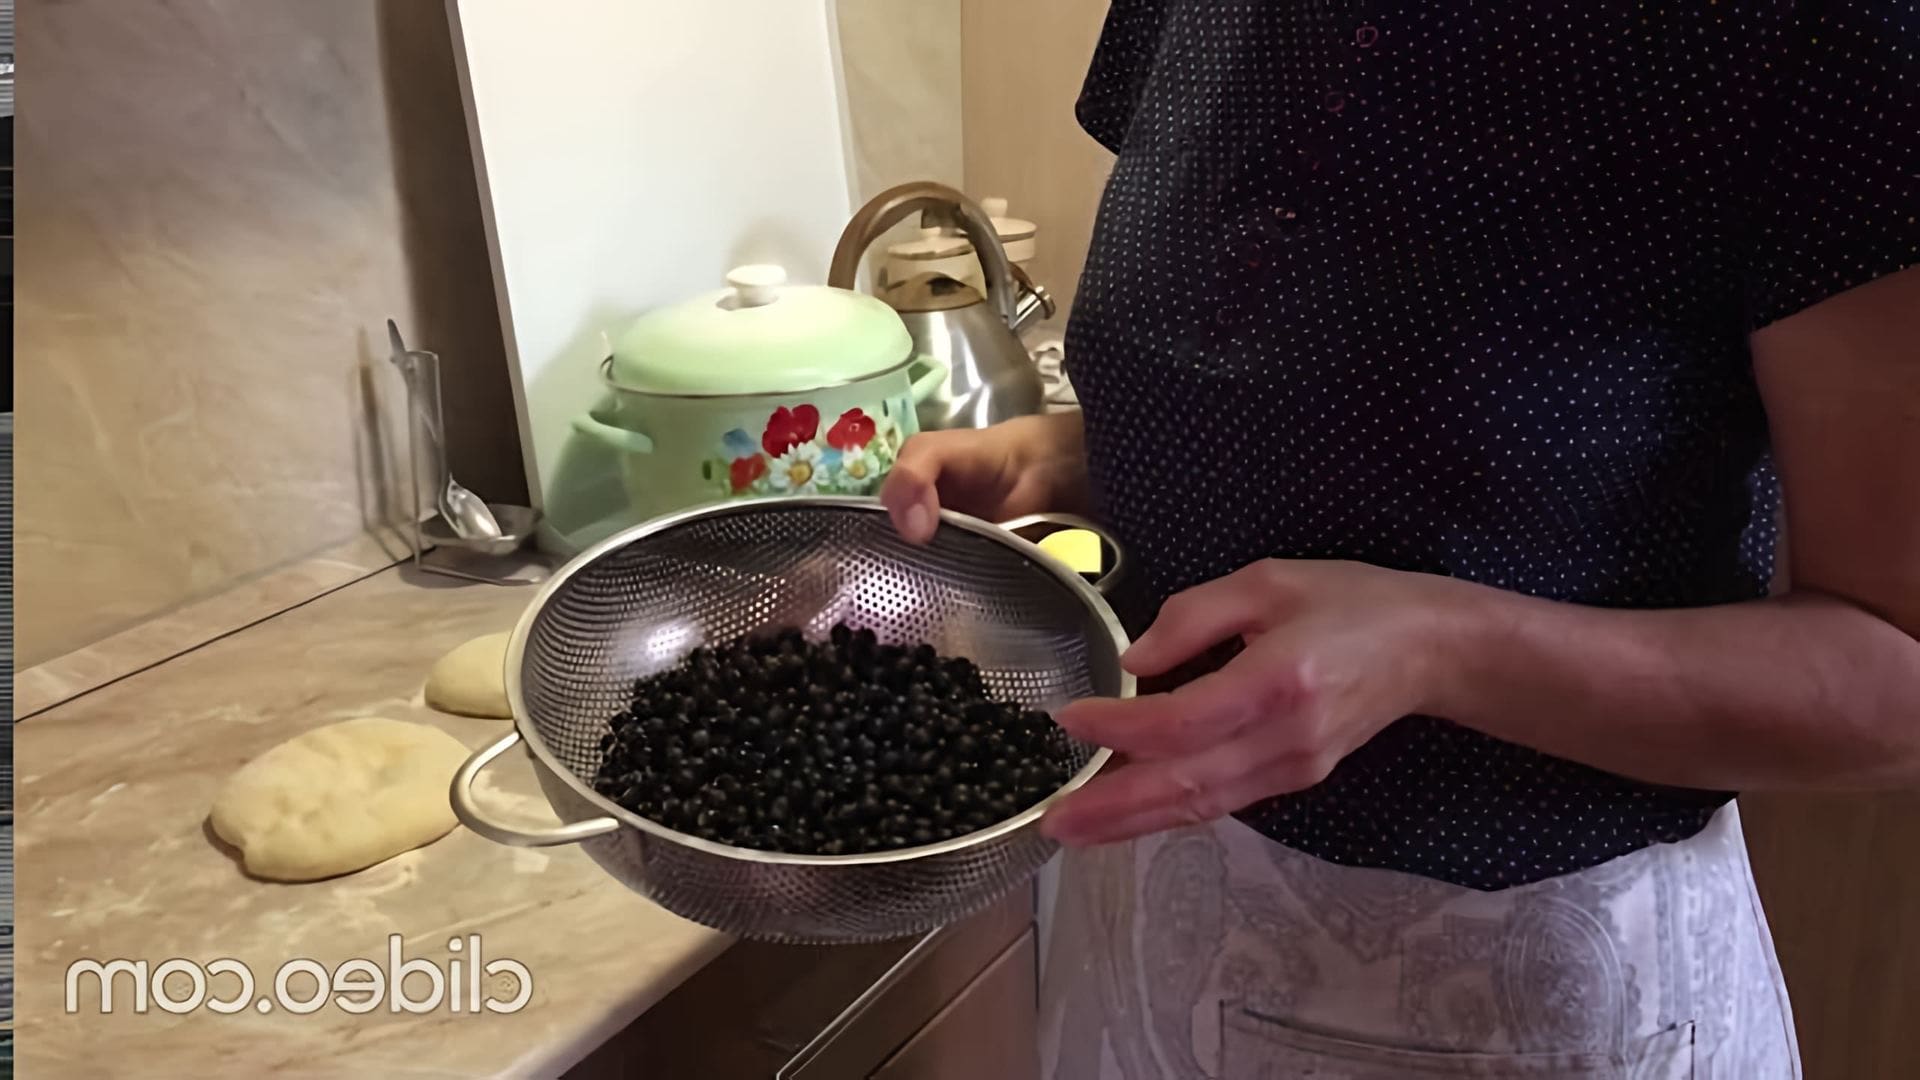 В этом видео демонстрируется процесс приготовления пирога с начинкой из вороняжки, традиционного блюда уральских казаков